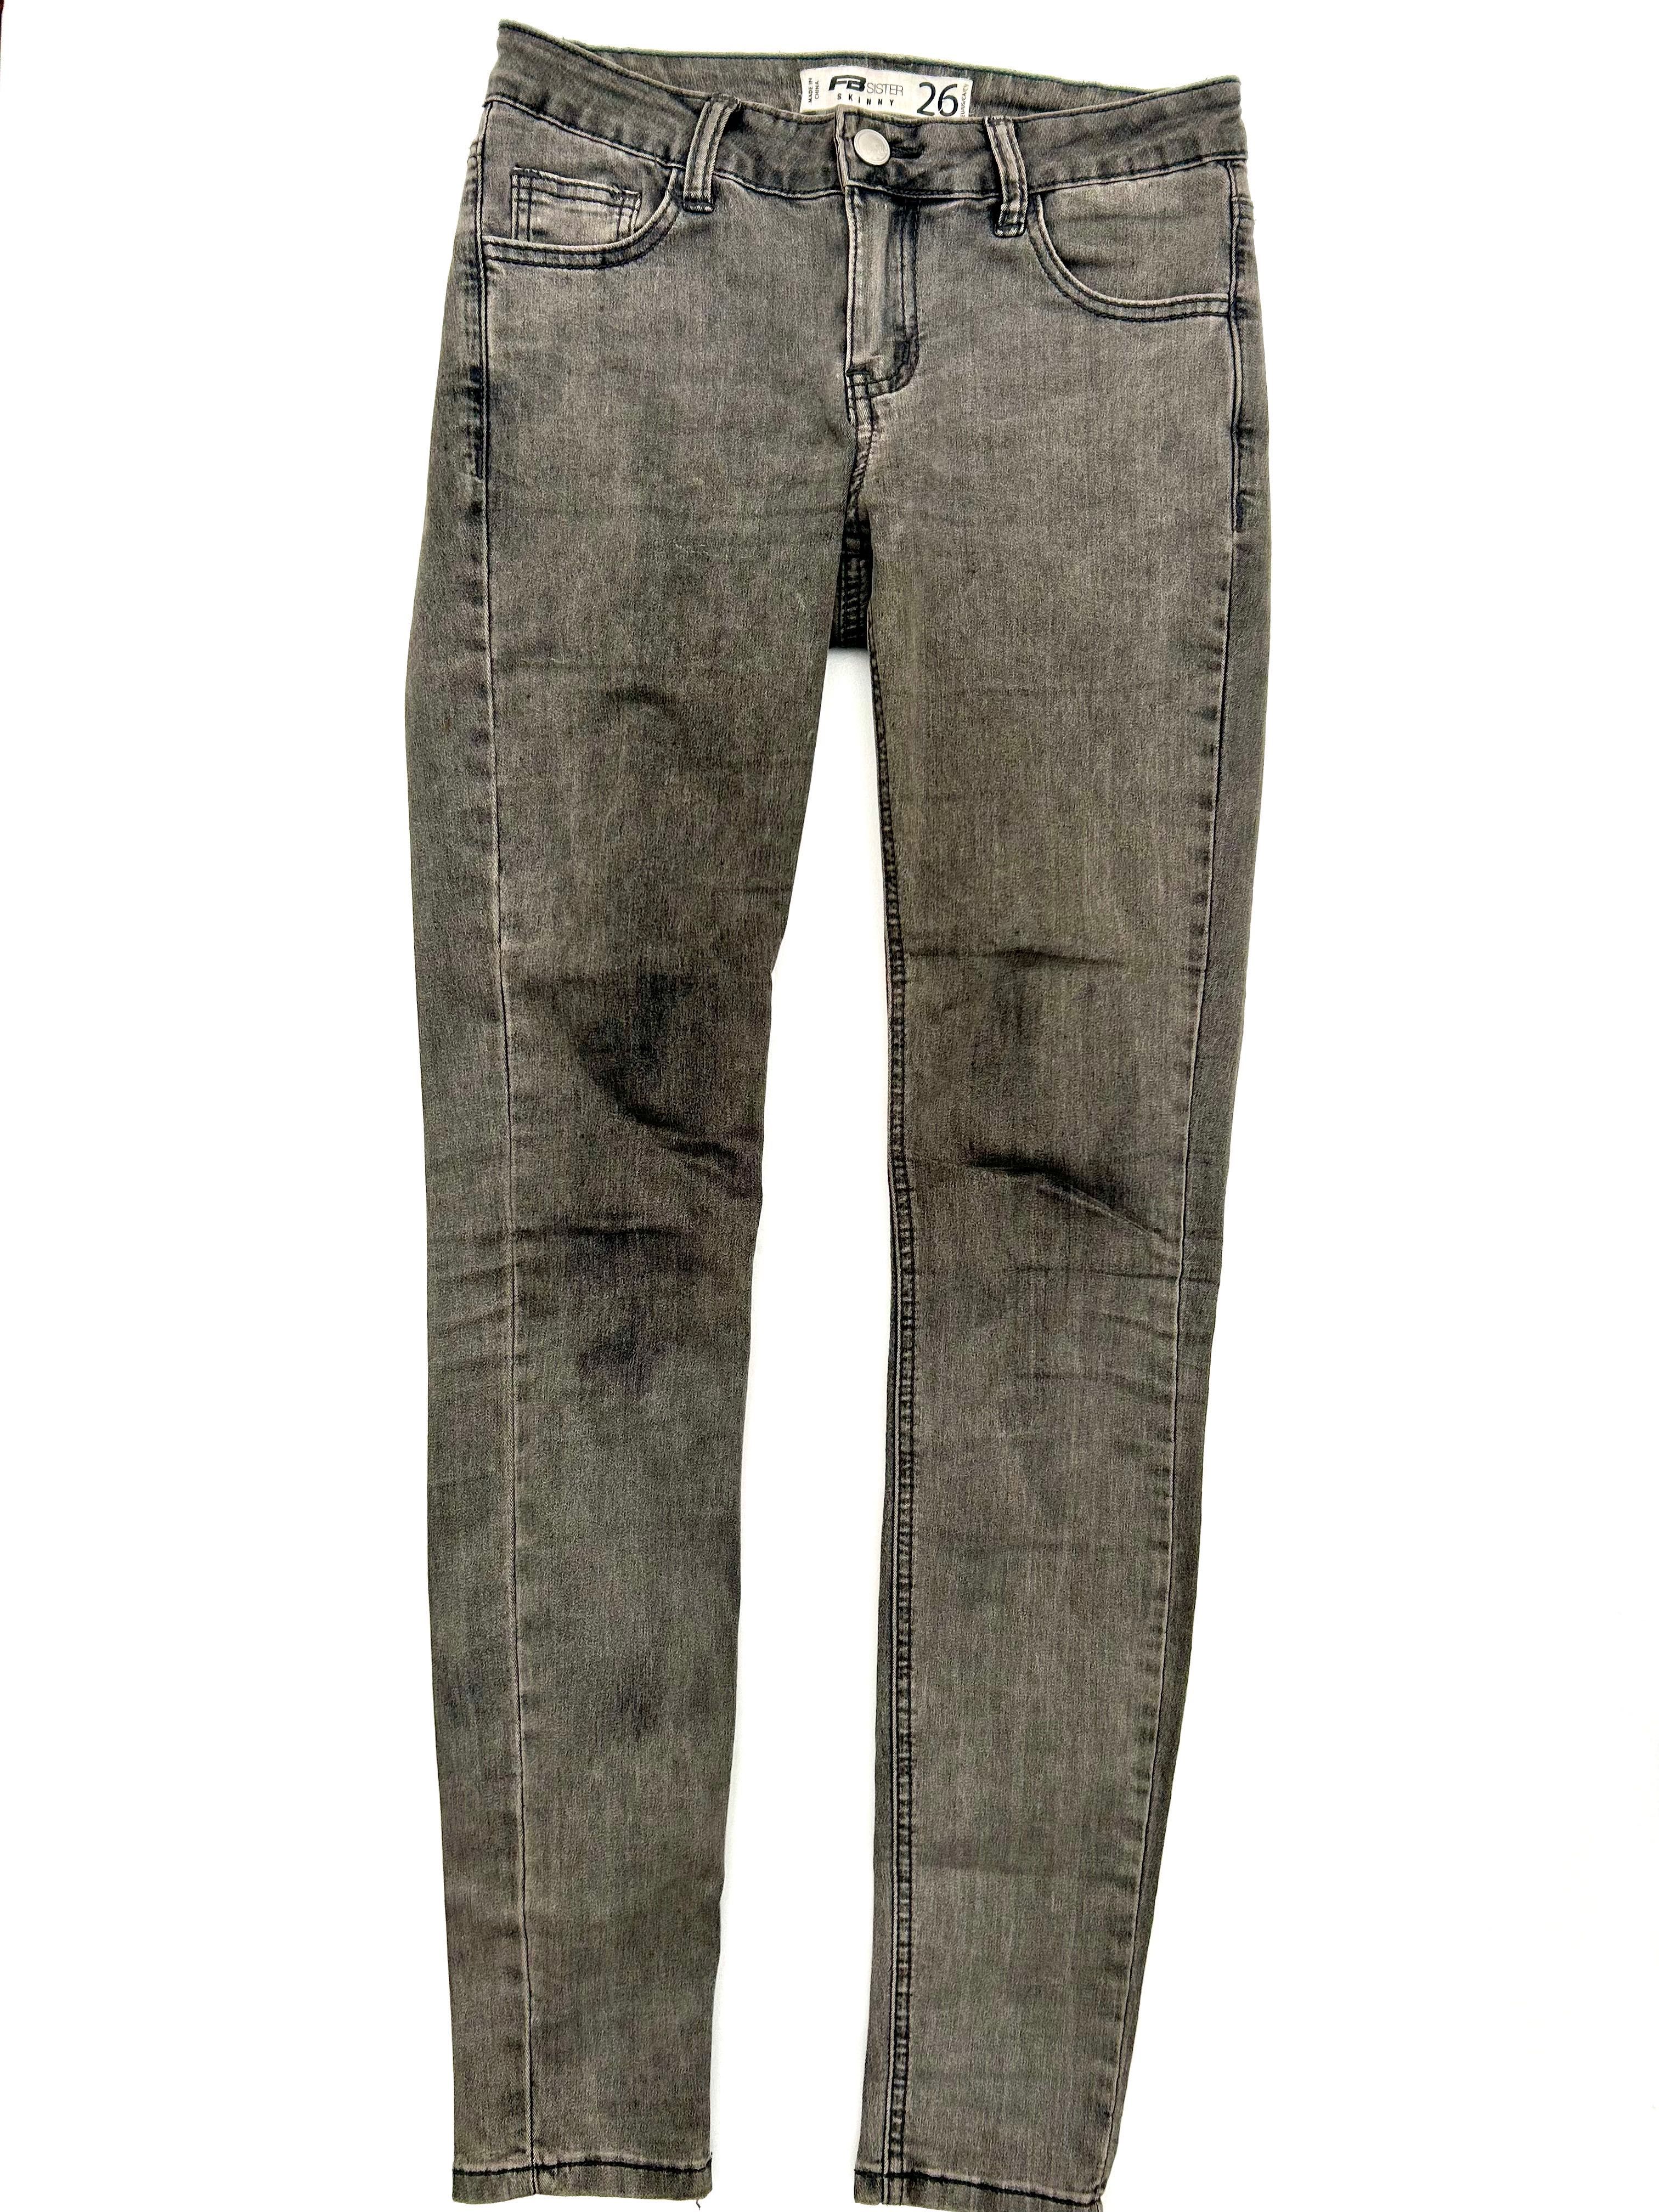 Дамски панталон, New Yorker, гащеризон, дънки с цепки и дантела